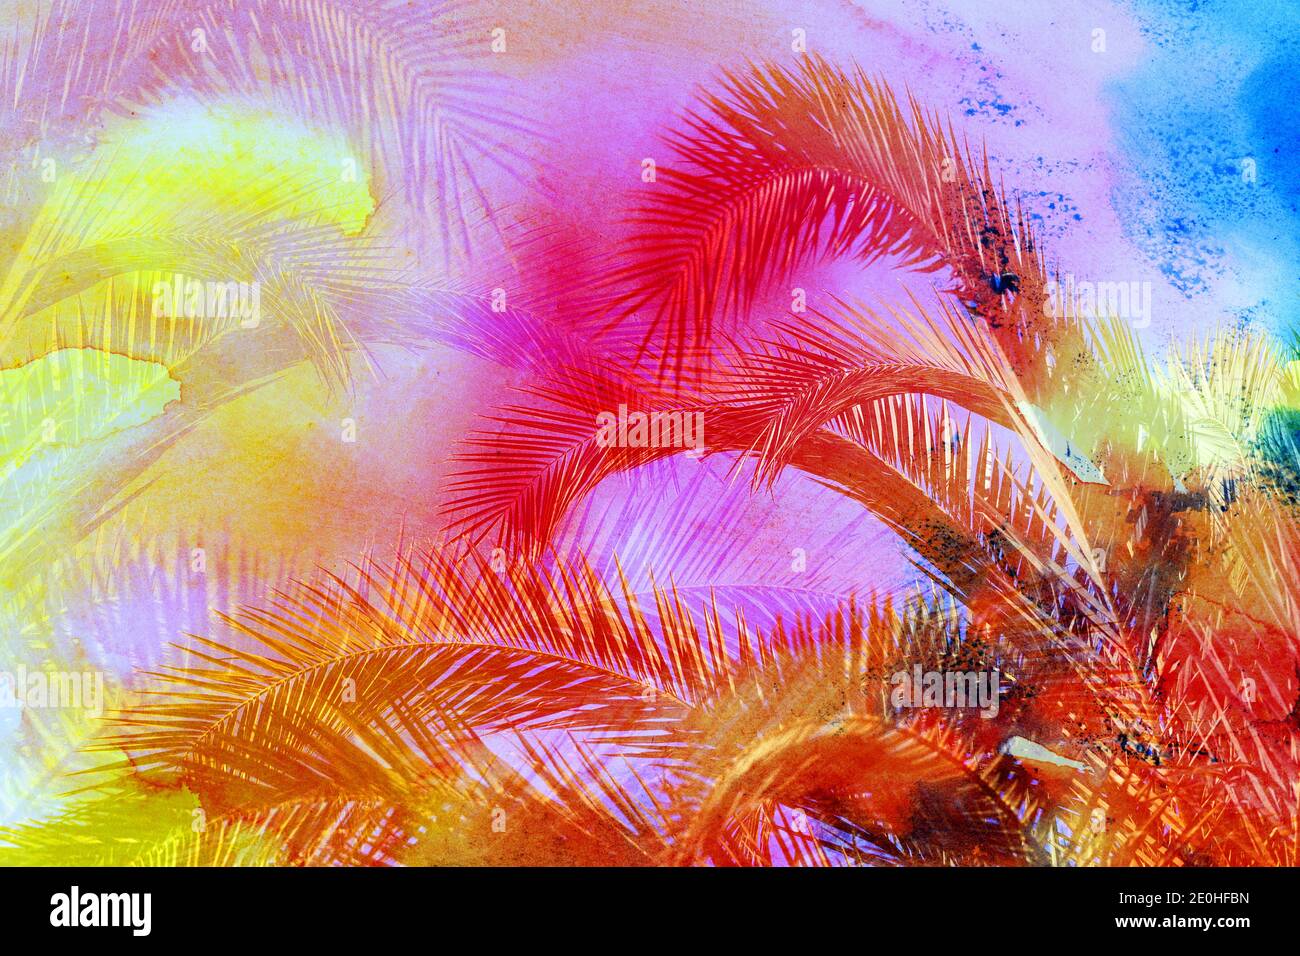 Photo lumineuse photo rétro colorée de palmiers sur une île tropicale. Un exemple pour la conception des paumes de voyage et tourismof rétronéons paumes dans le Banque D'Images